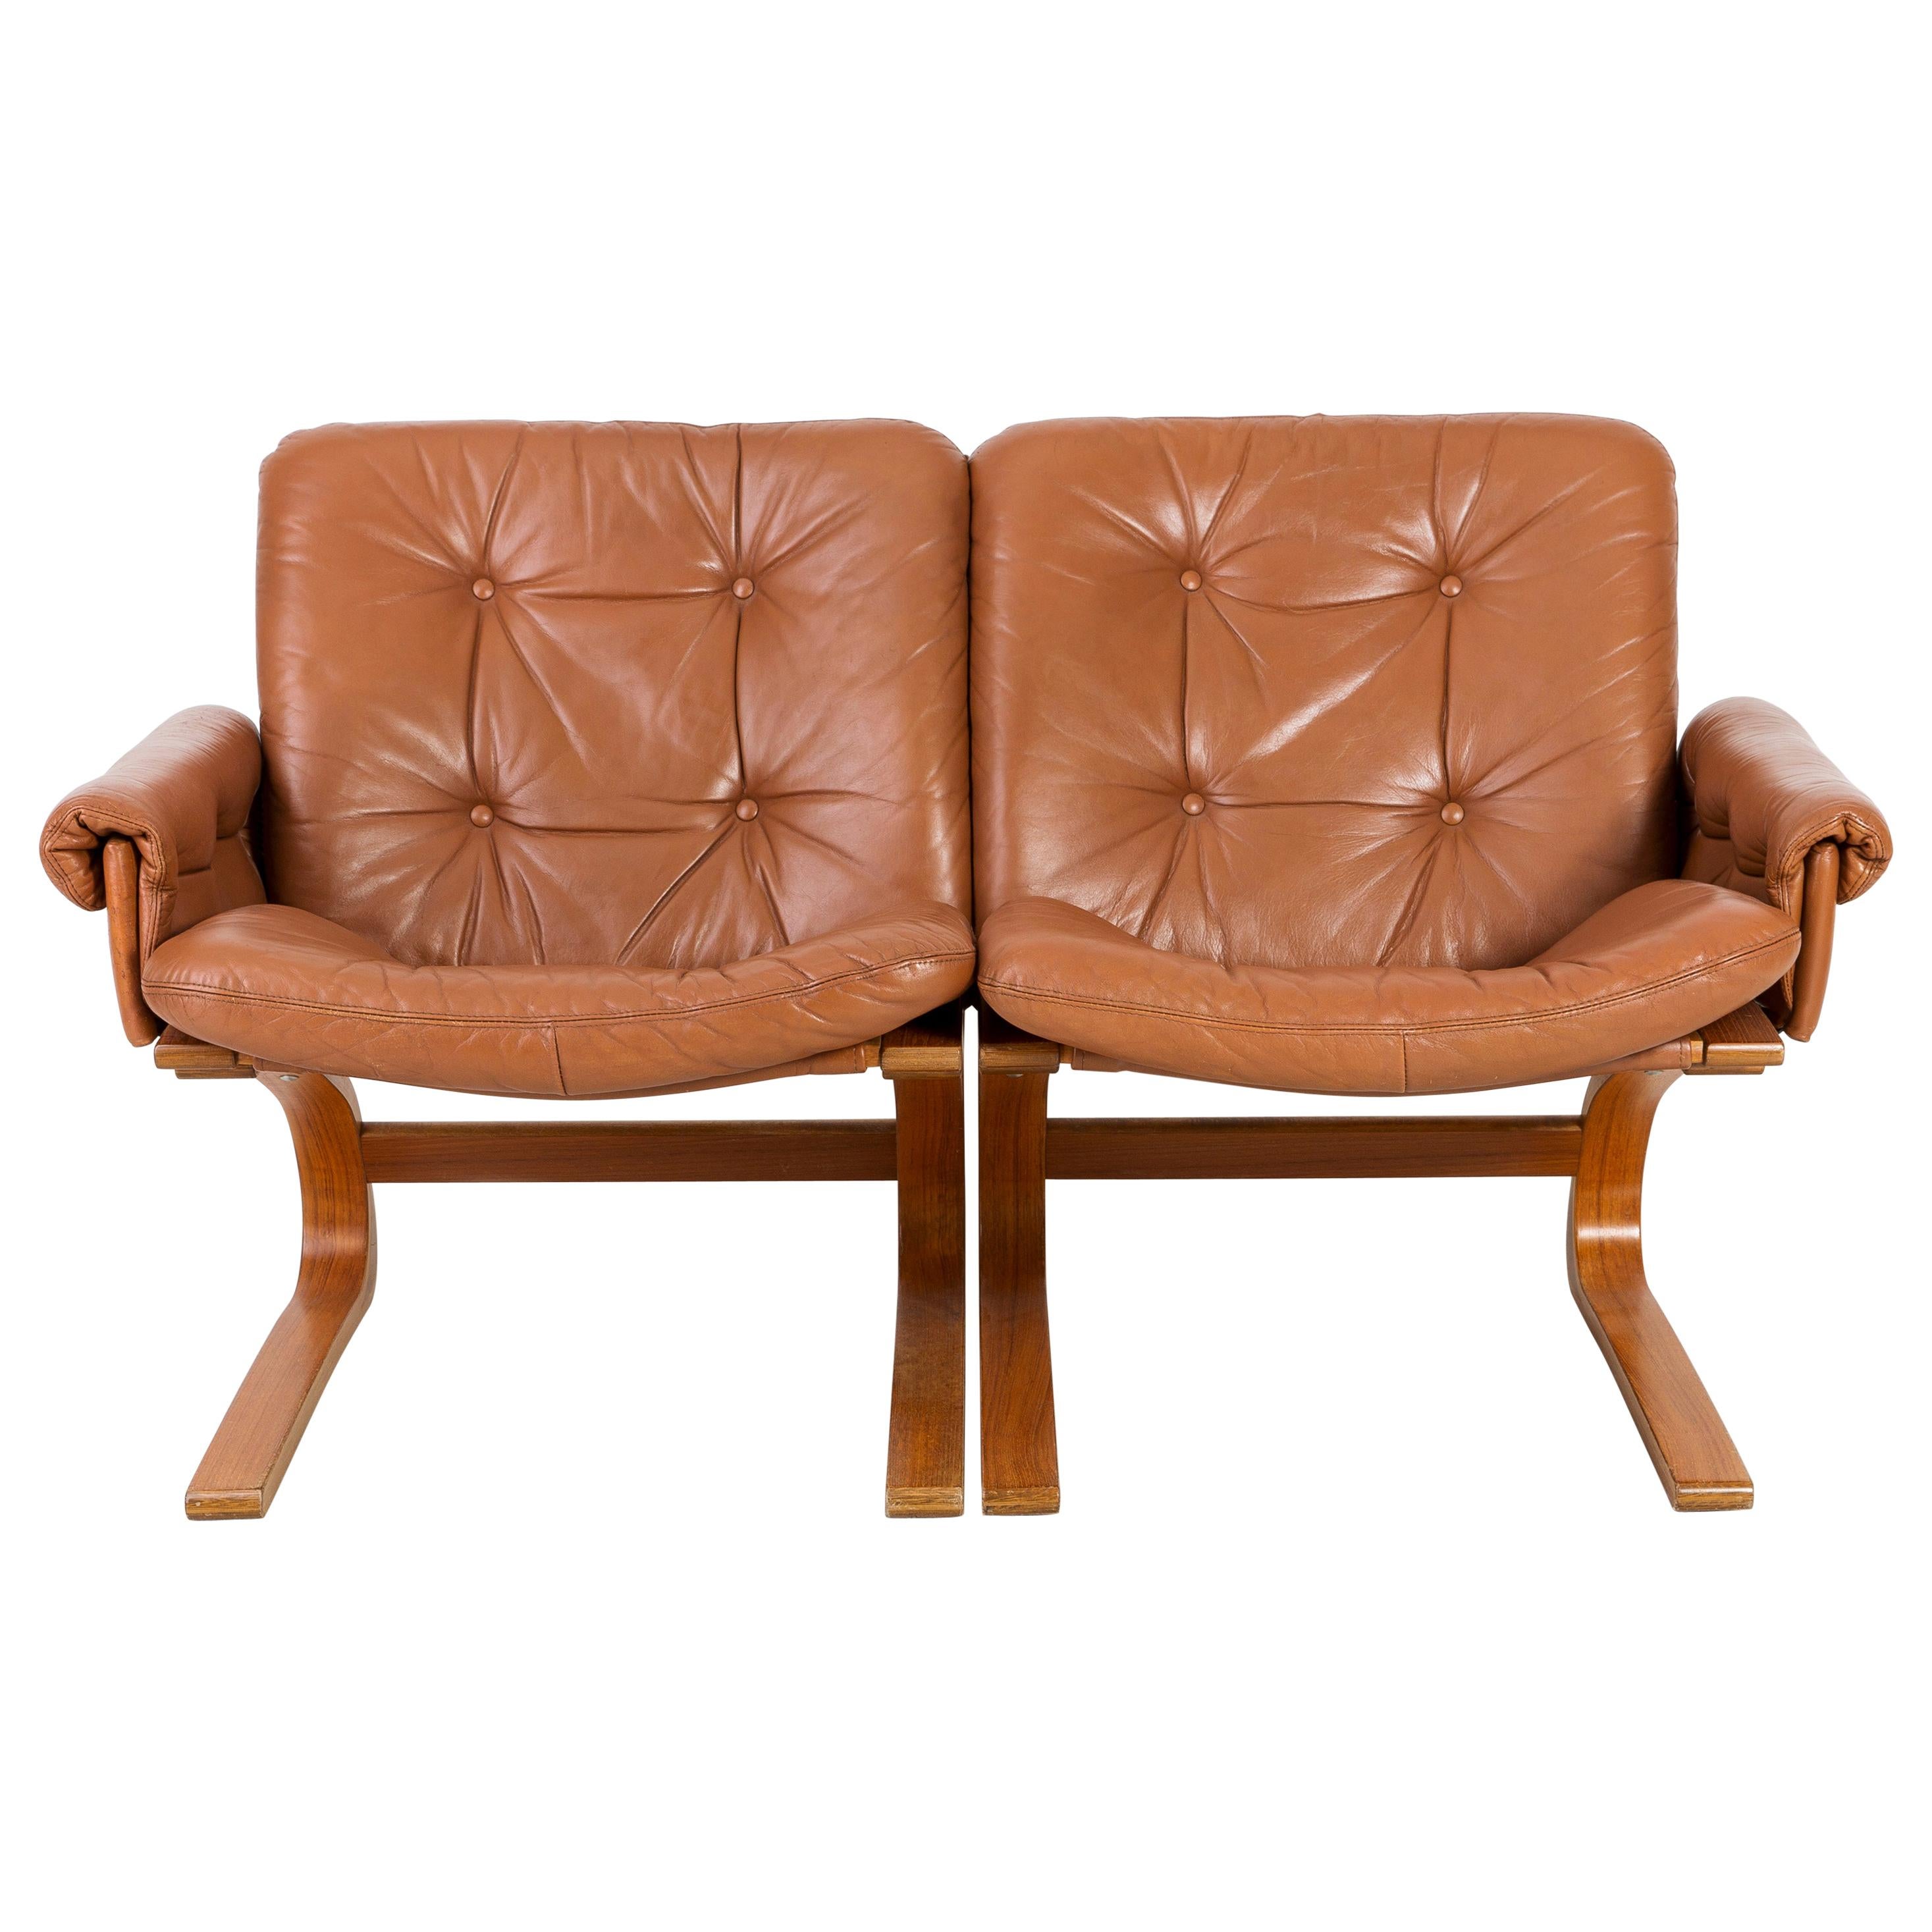 20th Century Teak Wood Kengu Sofa, Elsa & Nordahl Solheim for Rybo Rykken, 1970s For Sale